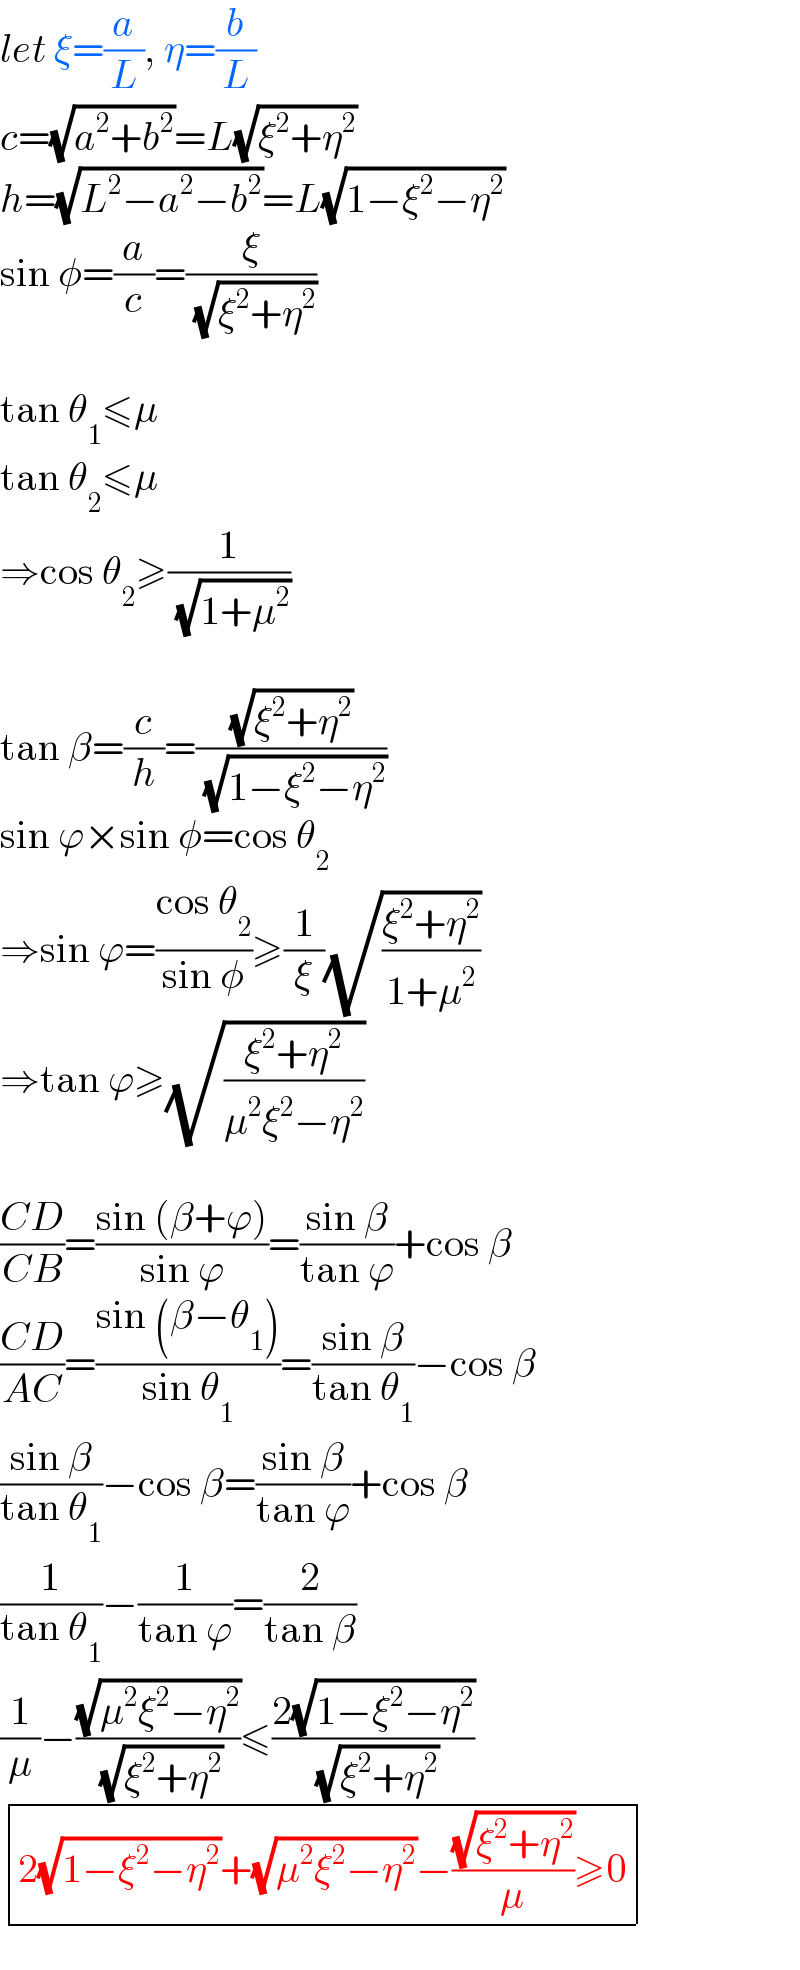 let ξ=(a/L), η=(b/L)  c=(√(a^2 +b^2 ))=L(√(ξ^2 +η^2 ))  h=(√(L^2 −a^2 −b^2 ))=L(√(1−ξ^2 −η^2 ))  sin φ=(a/c)=(ξ/( (√(ξ^2 +η^2 ))))    tan θ_1 ≤μ  tan θ_2 ≤μ   ⇒cos θ_2 ≥(1/( (√(1+μ^2 ))))    tan β=(c/h)=((√(ξ^2 +η^2 ))/( (√(1−ξ^2 −η^2 ))))  sin ϕ×sin φ=cos θ_2   ⇒sin ϕ=((cos θ_2 )/(sin φ))≥(1/ξ)(√((ξ^2 +η^2 )/(1+μ^2 )))  ⇒tan ϕ≥(√((ξ^2 +η^2 )/(μ^2 ξ^2 −η^2 )))    ((CD)/(CB))=((sin (β+ϕ))/(sin ϕ))=((sin β)/(tan ϕ))+cos β  ((CD)/(AC))=((sin (β−θ_1 ))/(sin θ_1 ))=((sin β)/(tan θ_1 ))−cos β  ((sin β)/(tan θ_1 ))−cos β=((sin β)/(tan ϕ))+cos β  (1/(tan θ_1 ))−(1/(tan ϕ))=(2/(tan β))  (1/μ)−((√(μ^2 ξ^2 −η^2 ))/( (√(ξ^2 +η^2 ))))≤((2(√(1−ξ^2 −η^2 )))/( (√(ξ^2 +η^2 ))))   determinant (((2(√(1−ξ^2 −η^2 ))+(√(μ^2 ξ^2 −η^2 ))−((√(ξ^2 +η^2 ))/μ)≥0)))  